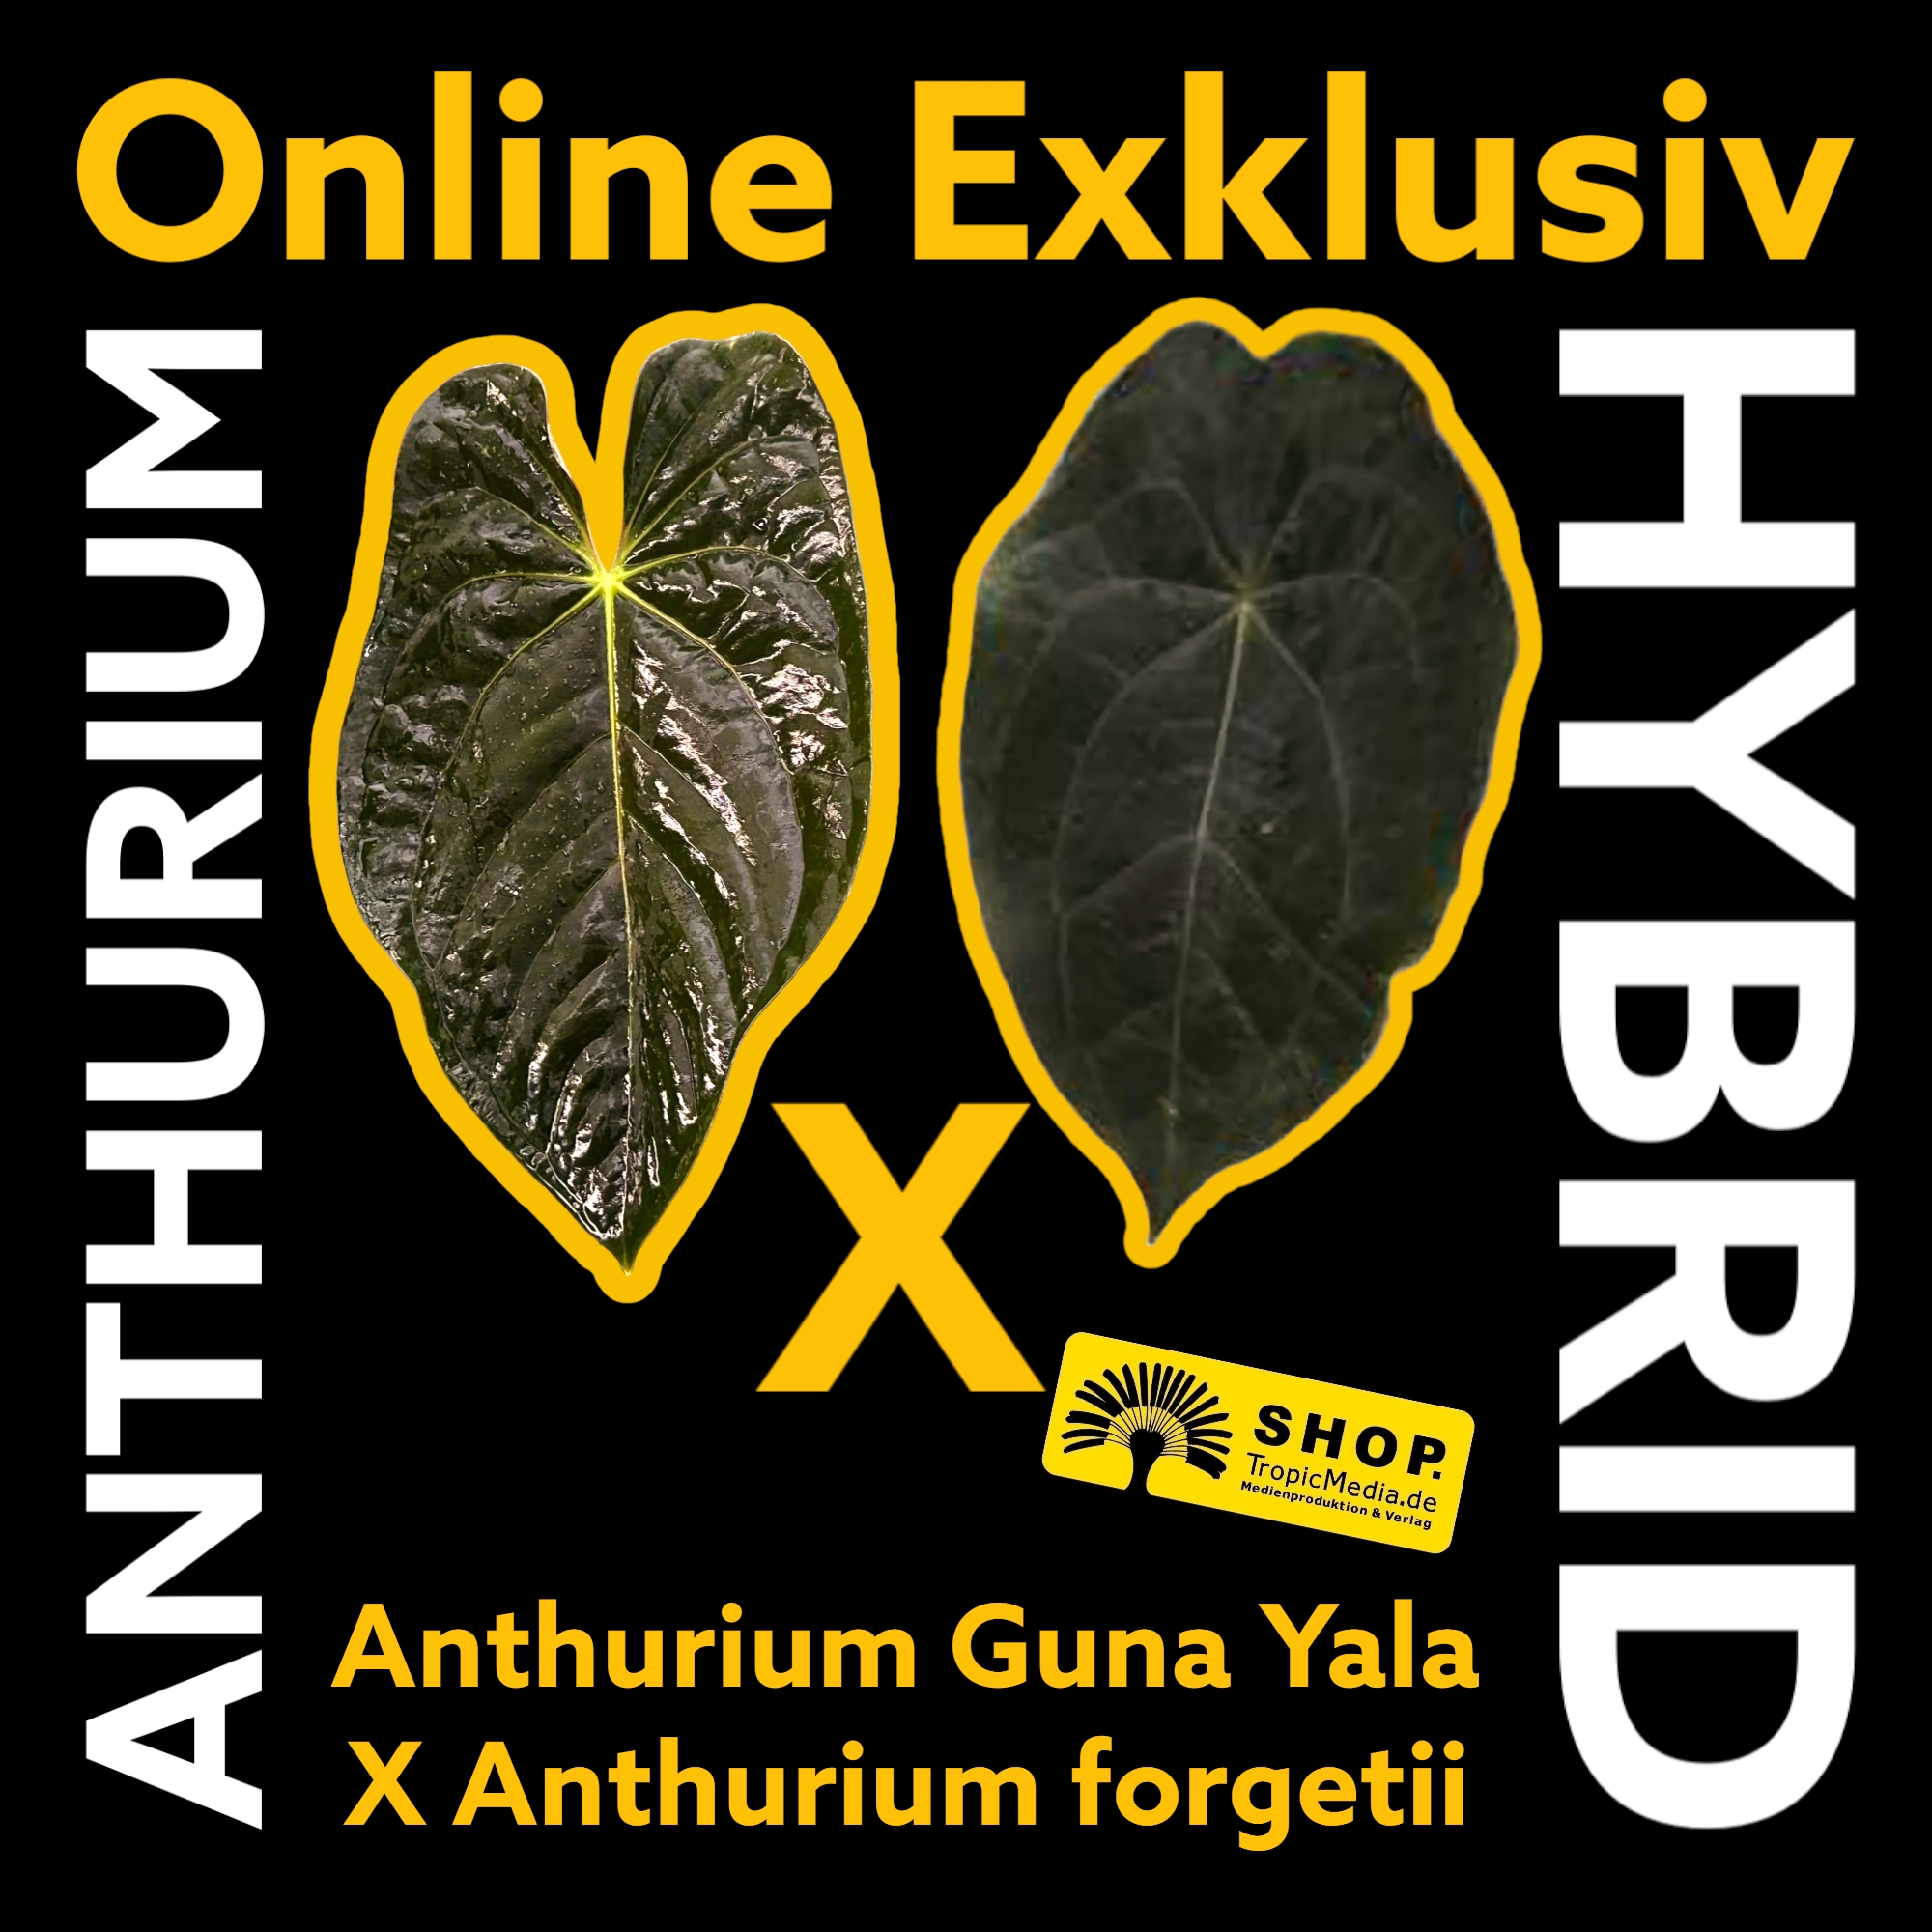 Anthurium Guna Yala X Anthurium forgetii EXQUISITE Kreuzung erstmals in Europa